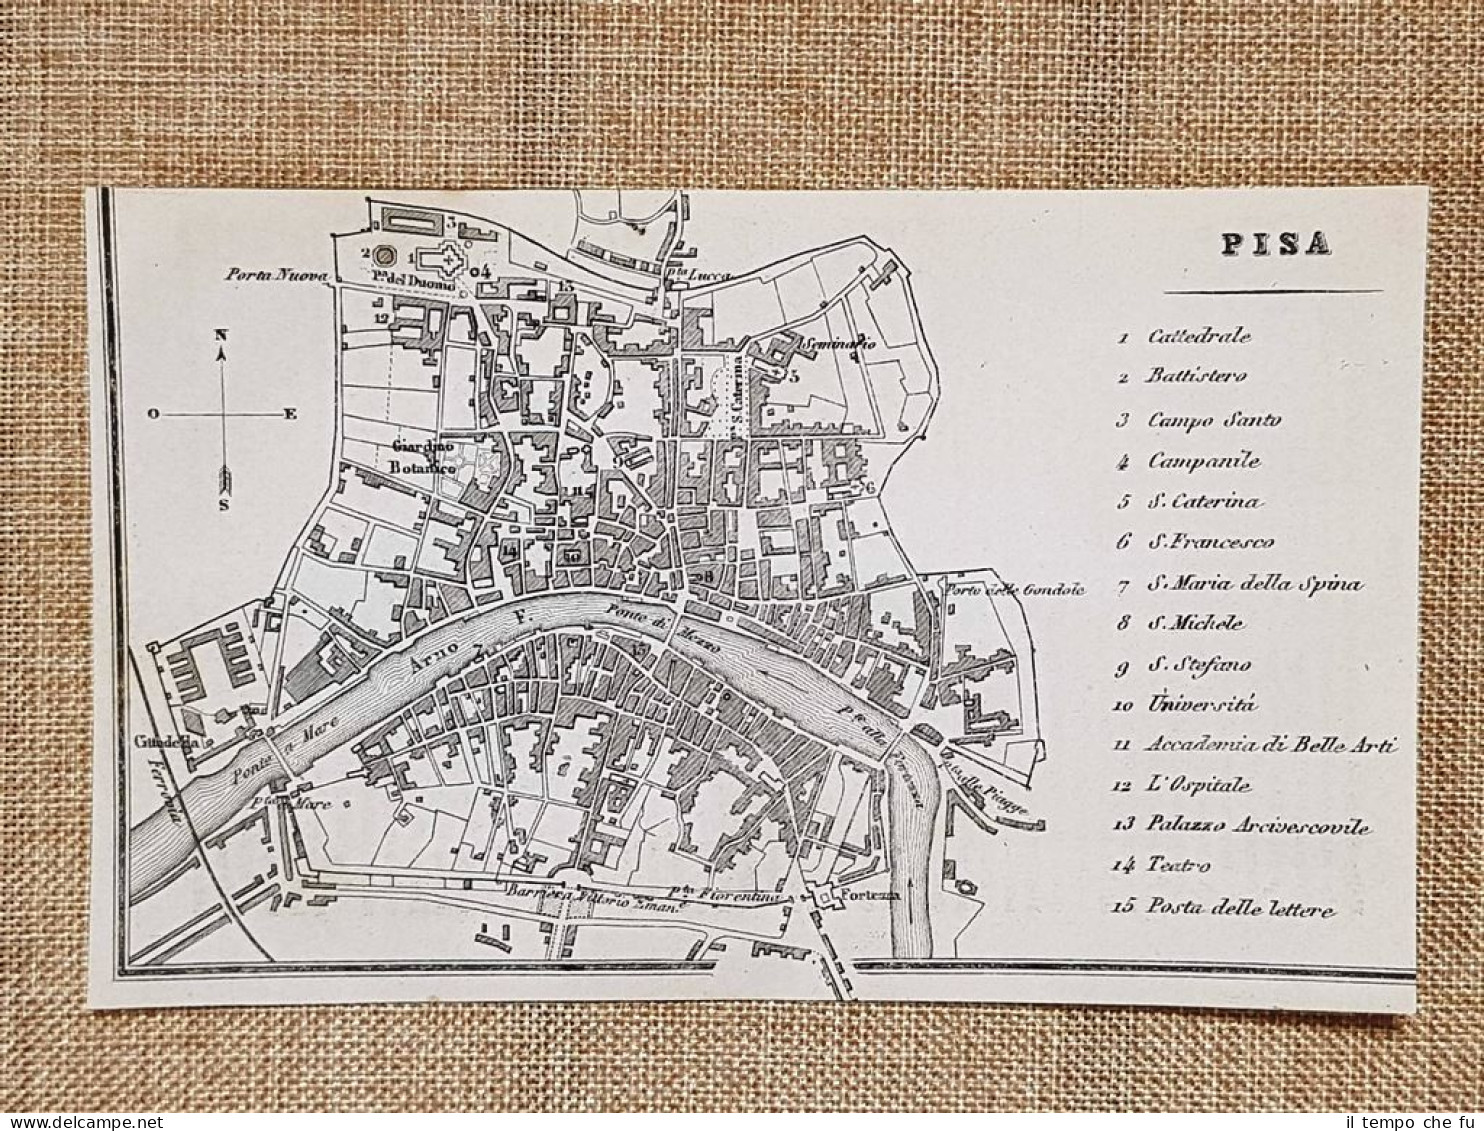 Rara Ed Antica Pianta Topografica Di Pisa Anno 1871 Ferdinando Artaria E Figlio - Cartes Géographiques